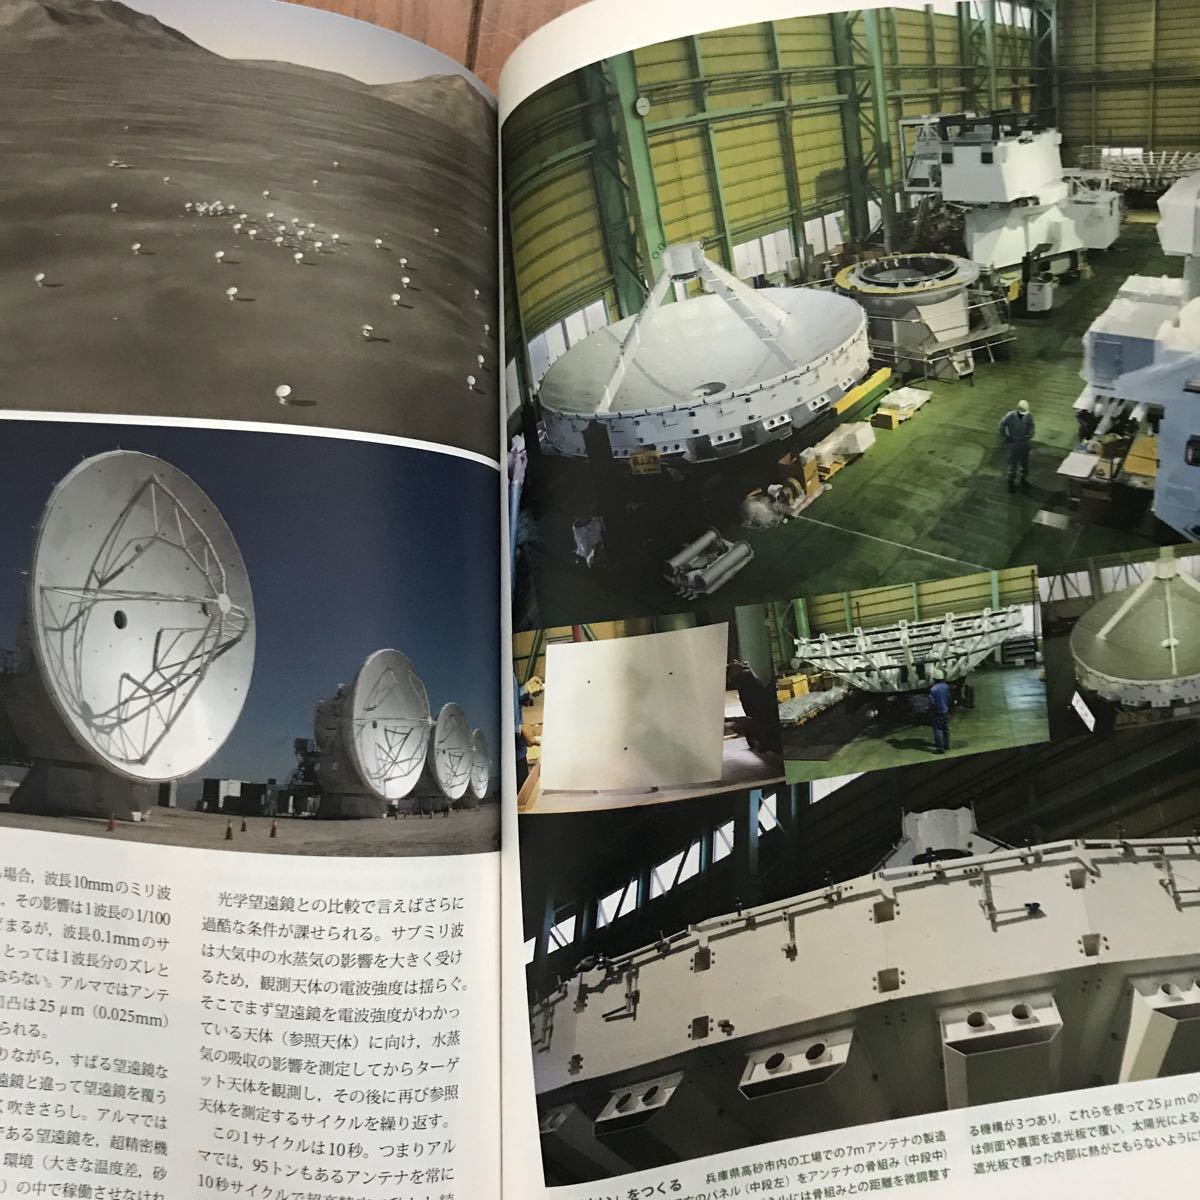 宇宙大航海 日本の天文学と惑星探査のいま/日経サイエンス編集部